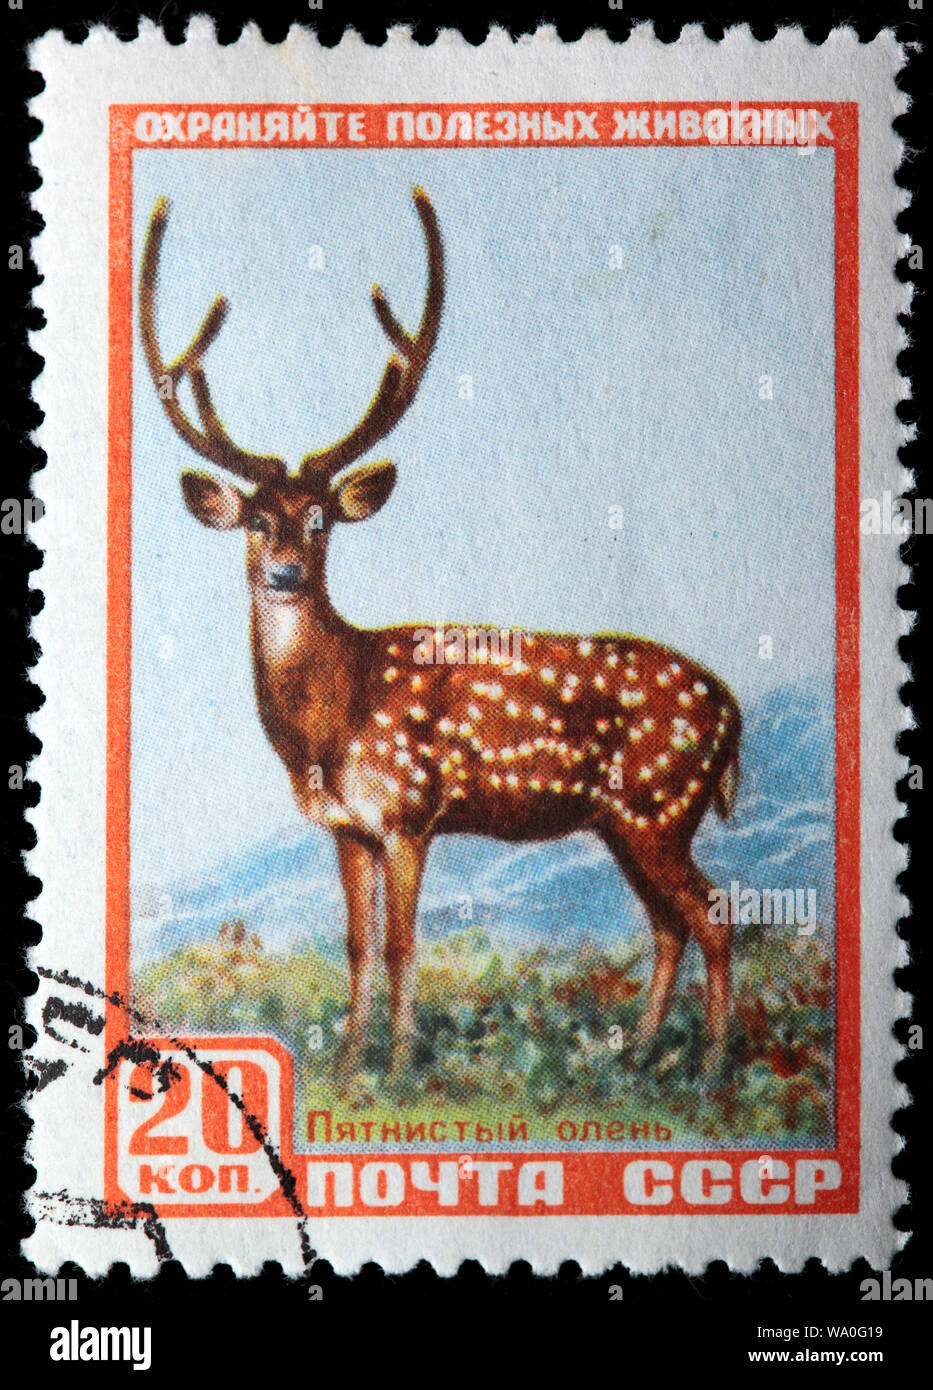 Cerf sika de Manchourie, Cervus nippon dybowskii, timbre-poste, Russie, URSS, 1957 Banque D'Images